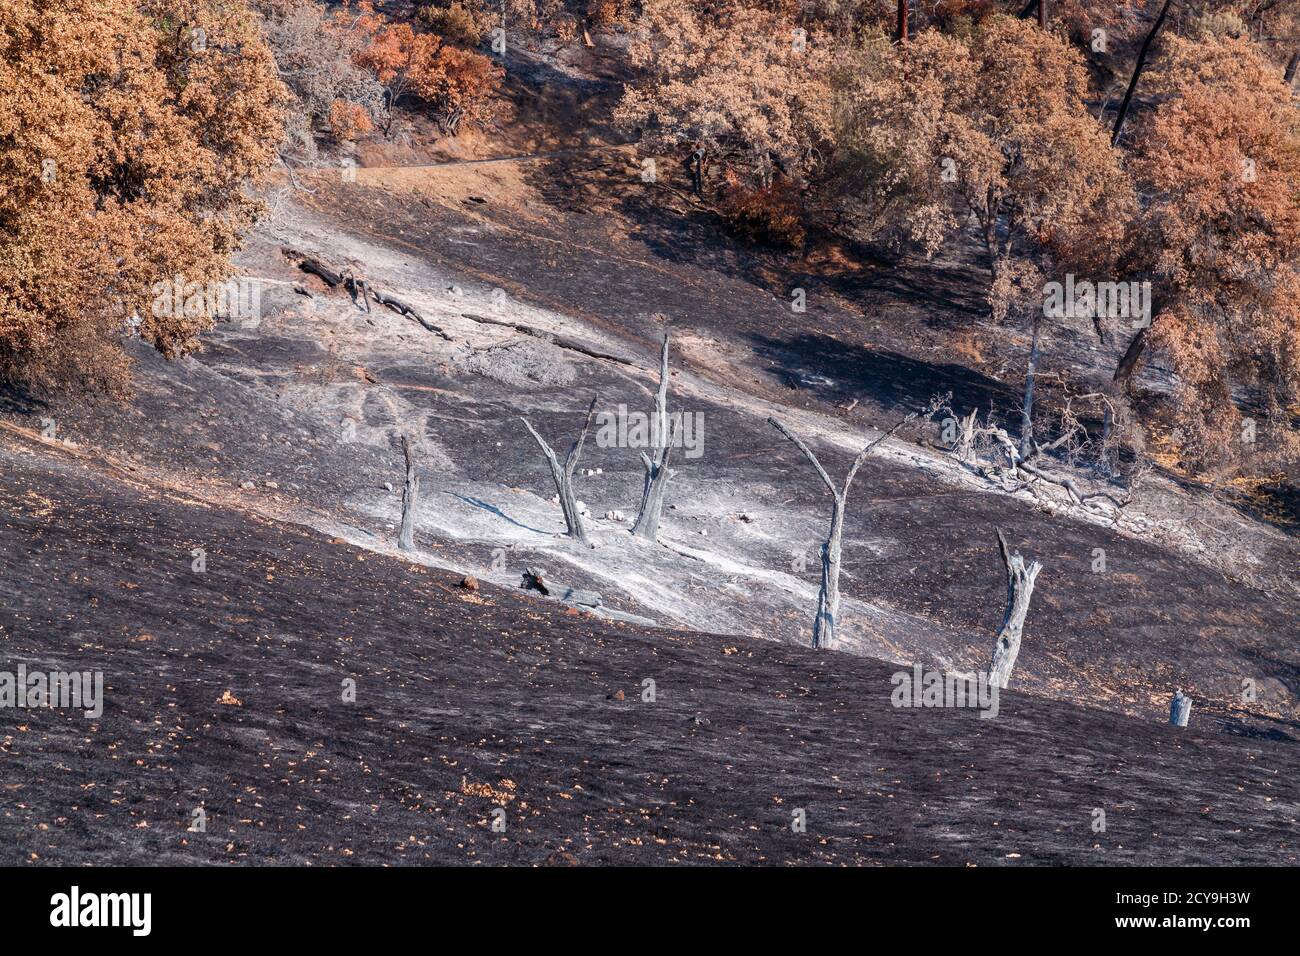 La brûlure d'automne, brûlée par des feux de forêt dans le nord de la Californie, une beauté dévastée. Banque D'Images